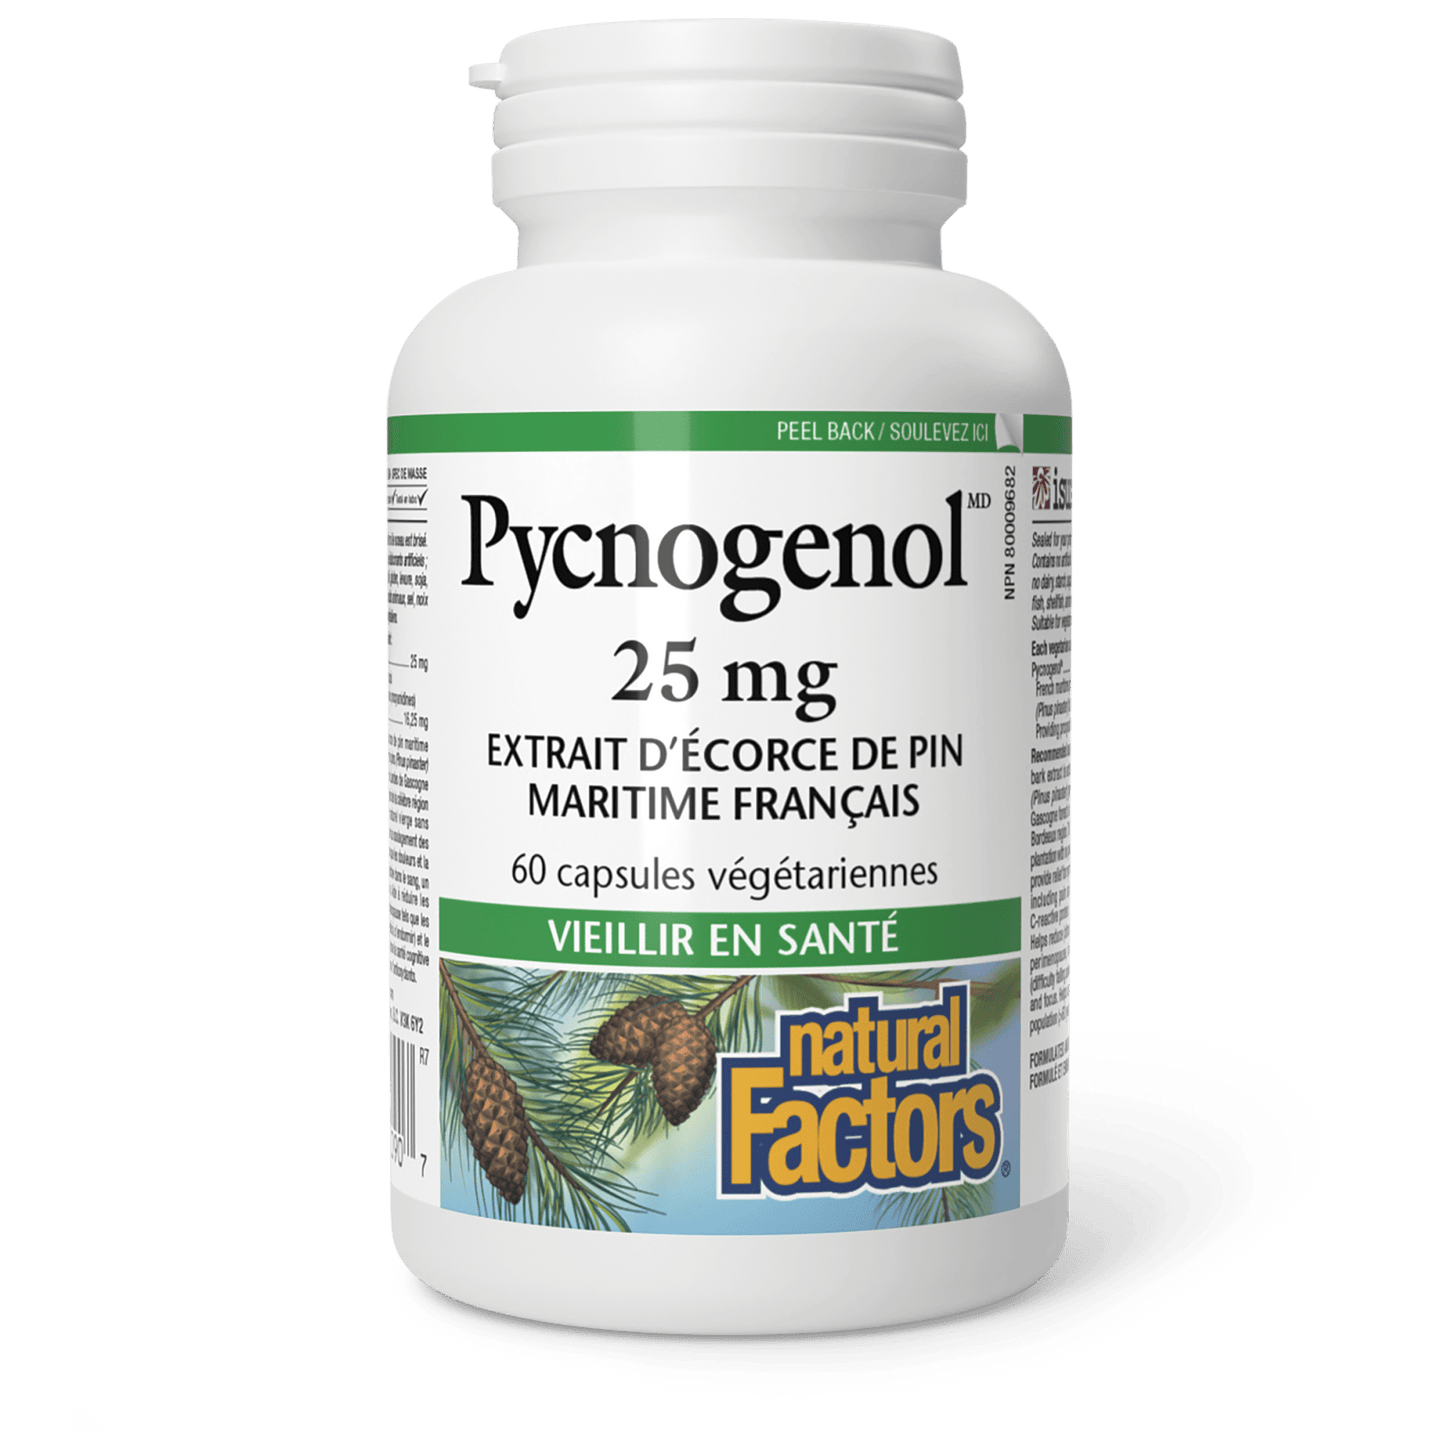 Pycnogenol 25 mg, Natural Factors|v|image|2090